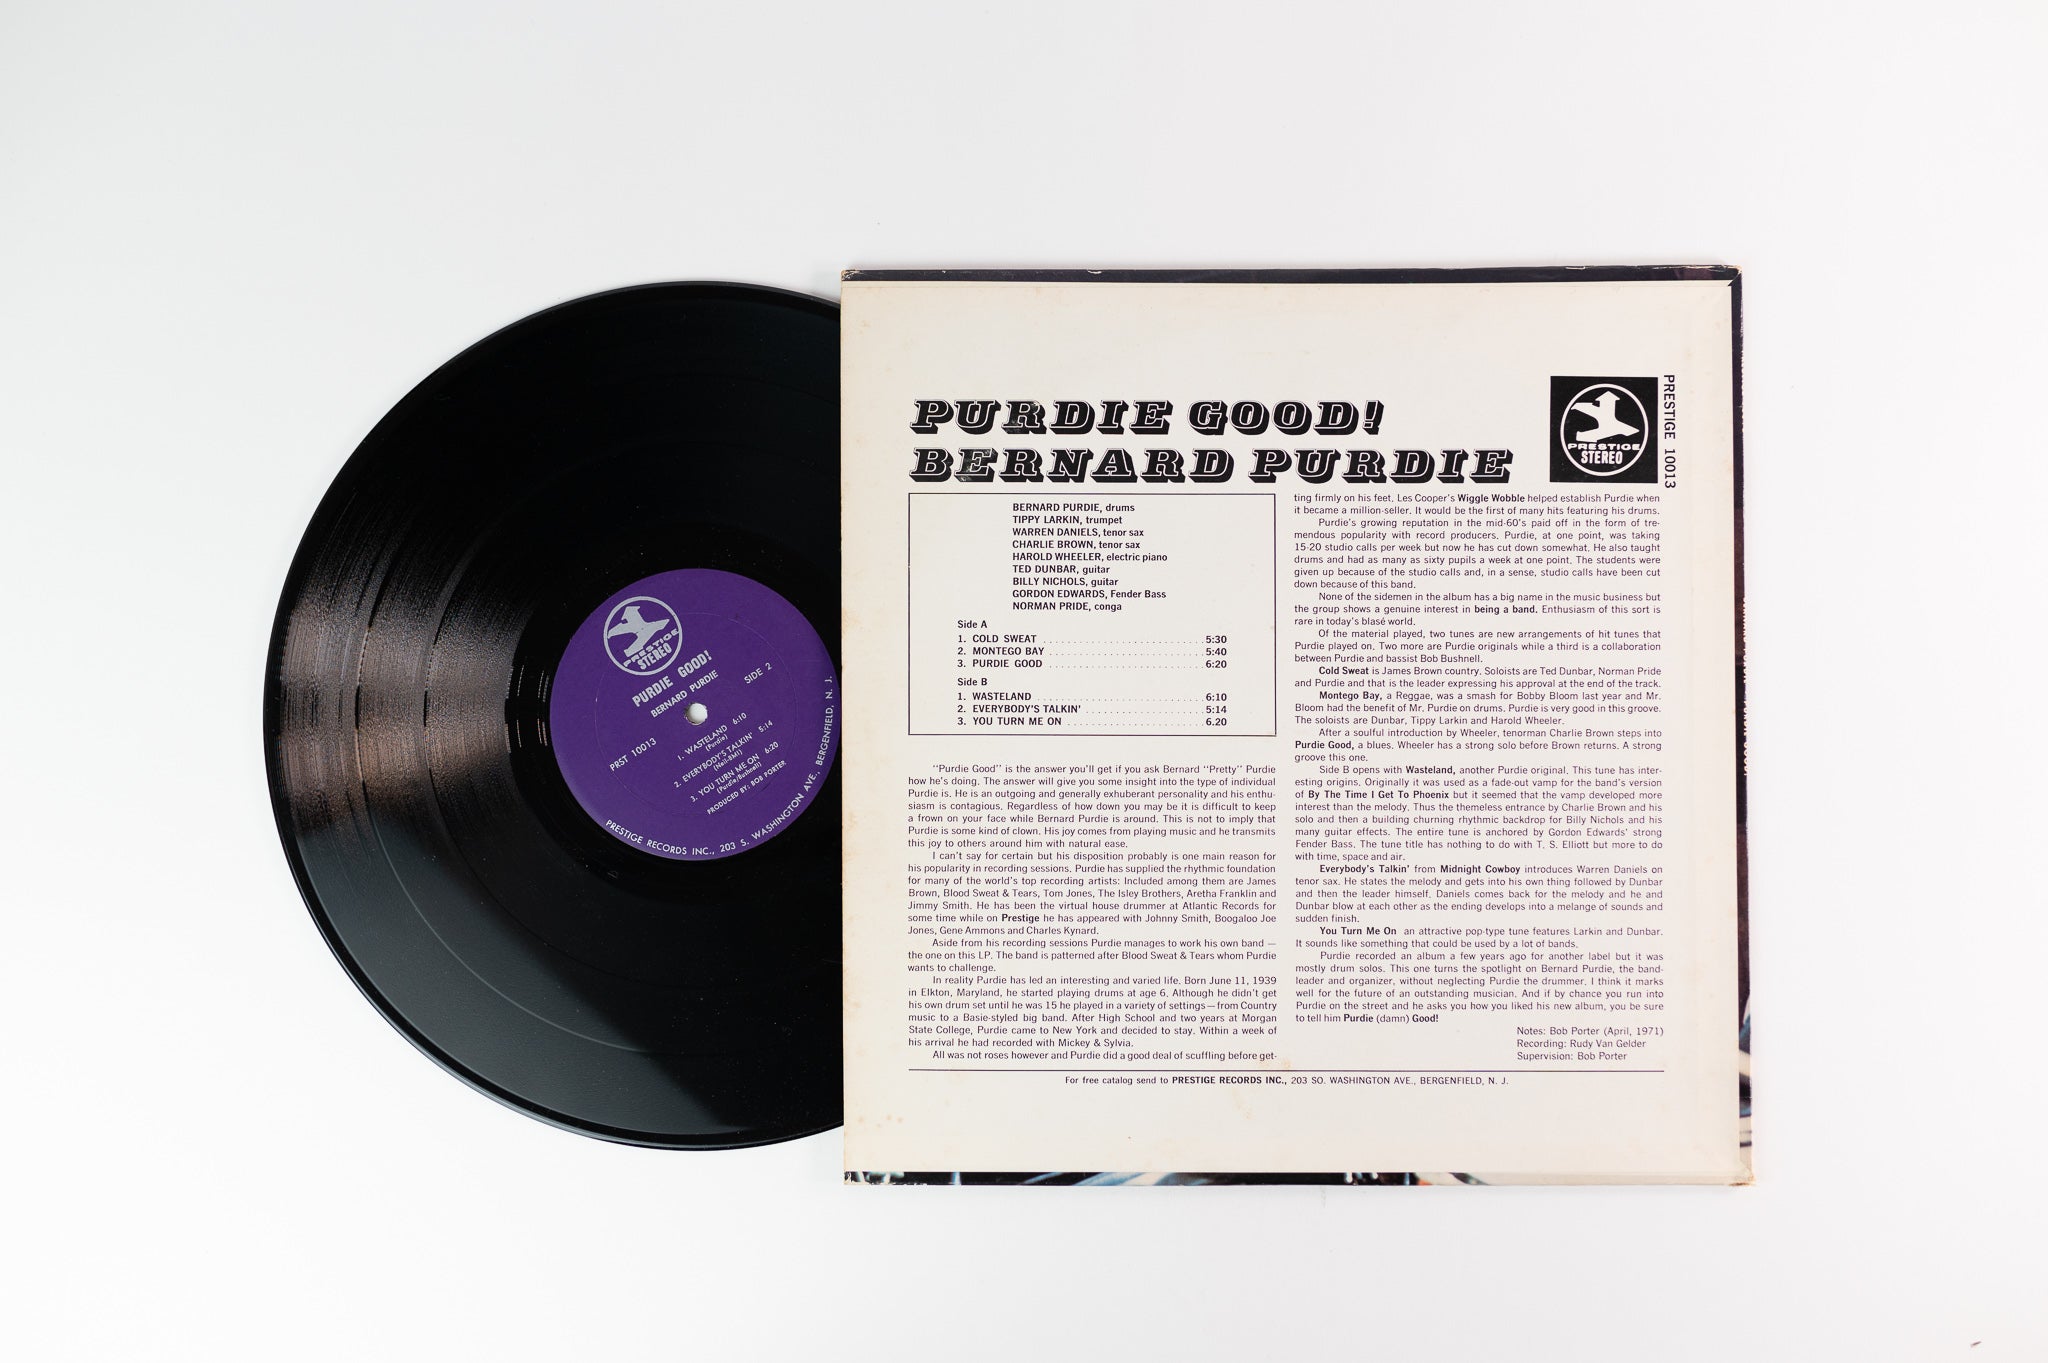 Bernard Purdie - Purdie Good! on Prestige